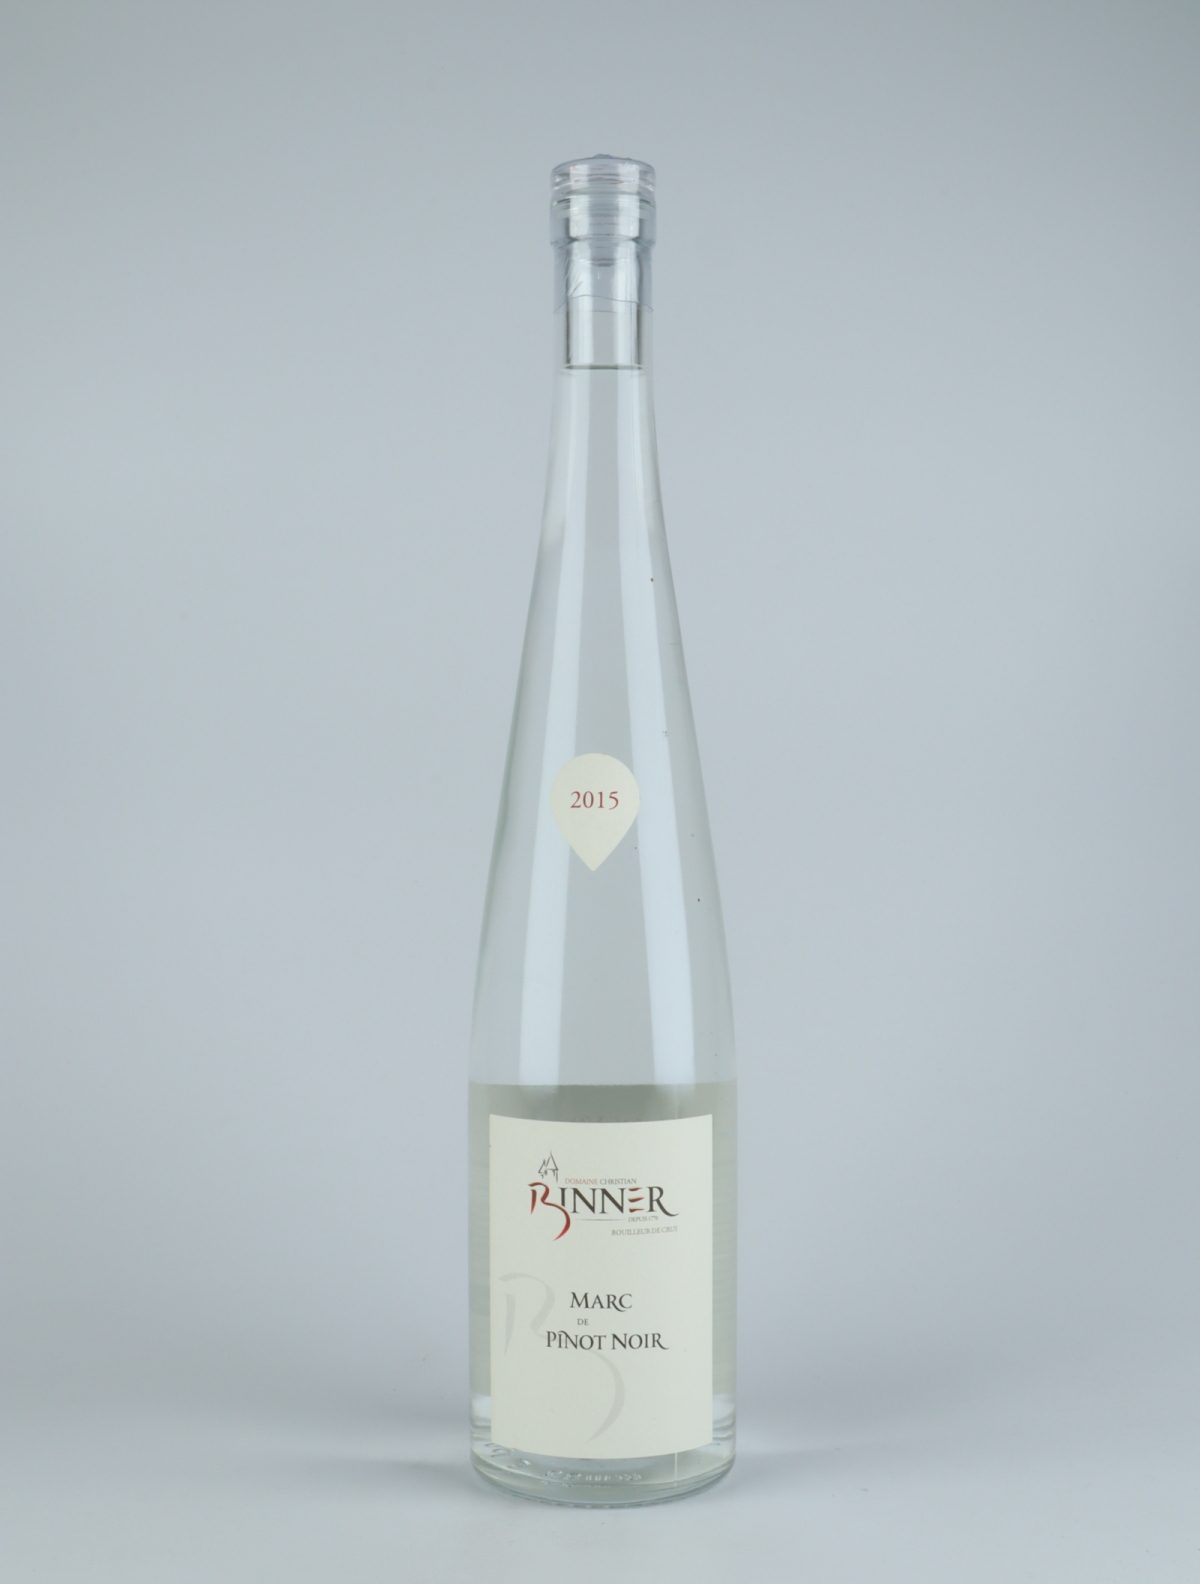 A bottle N.V. Marc de Pinot Noir Spirits from Domaine Christian Binner, Alsace in France